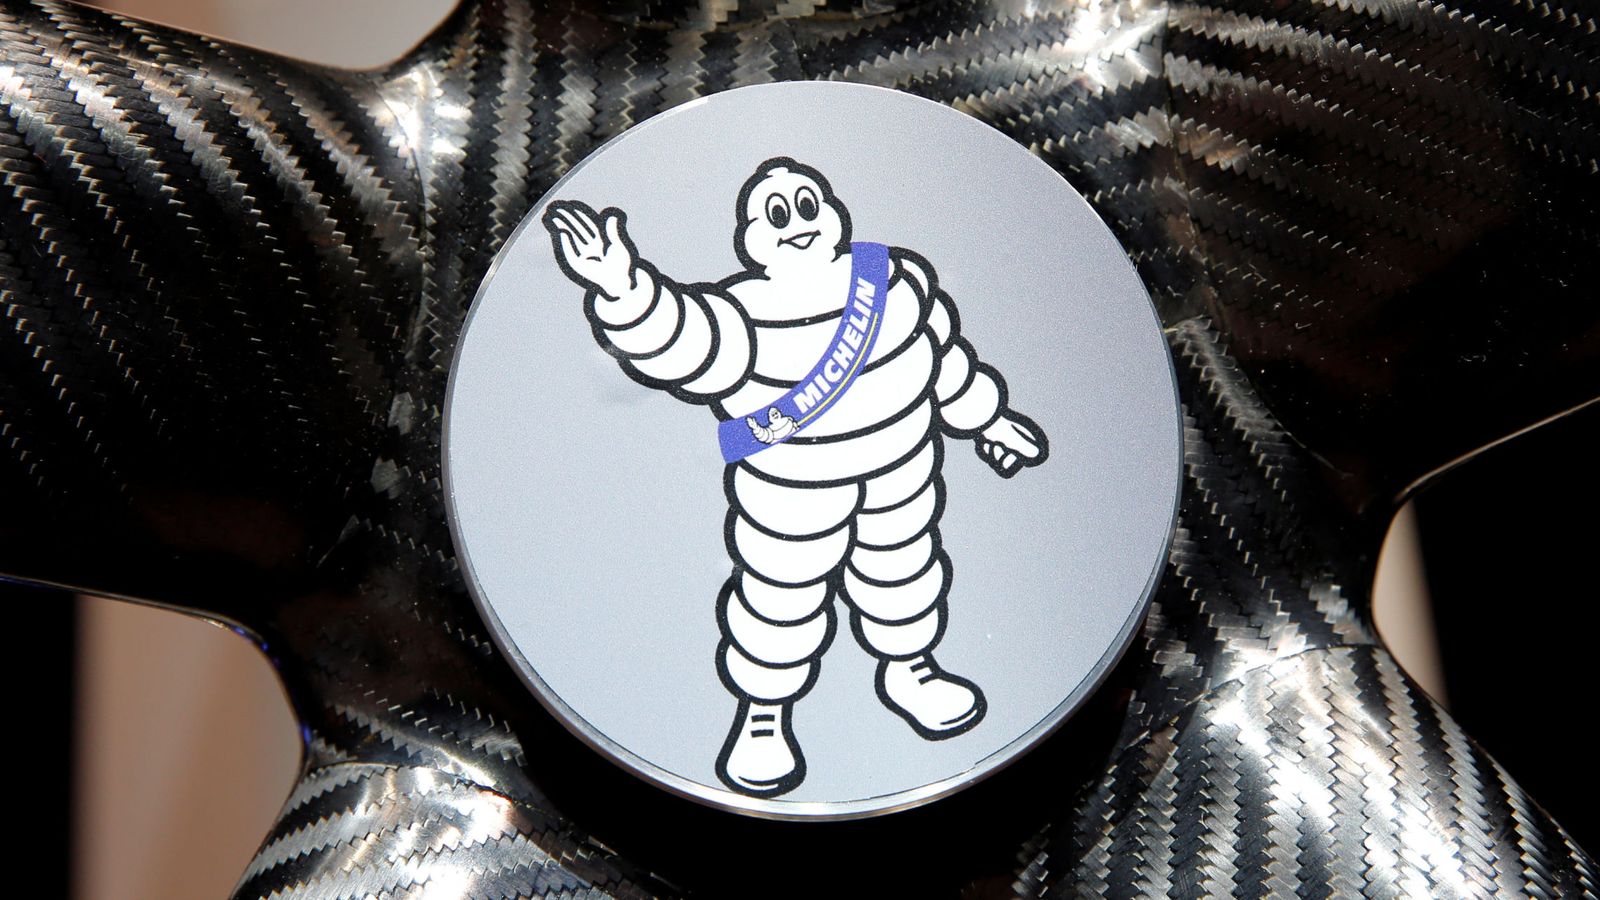 Foto: El logo de Michelin en una exhibición de coches de París. (Reuters)